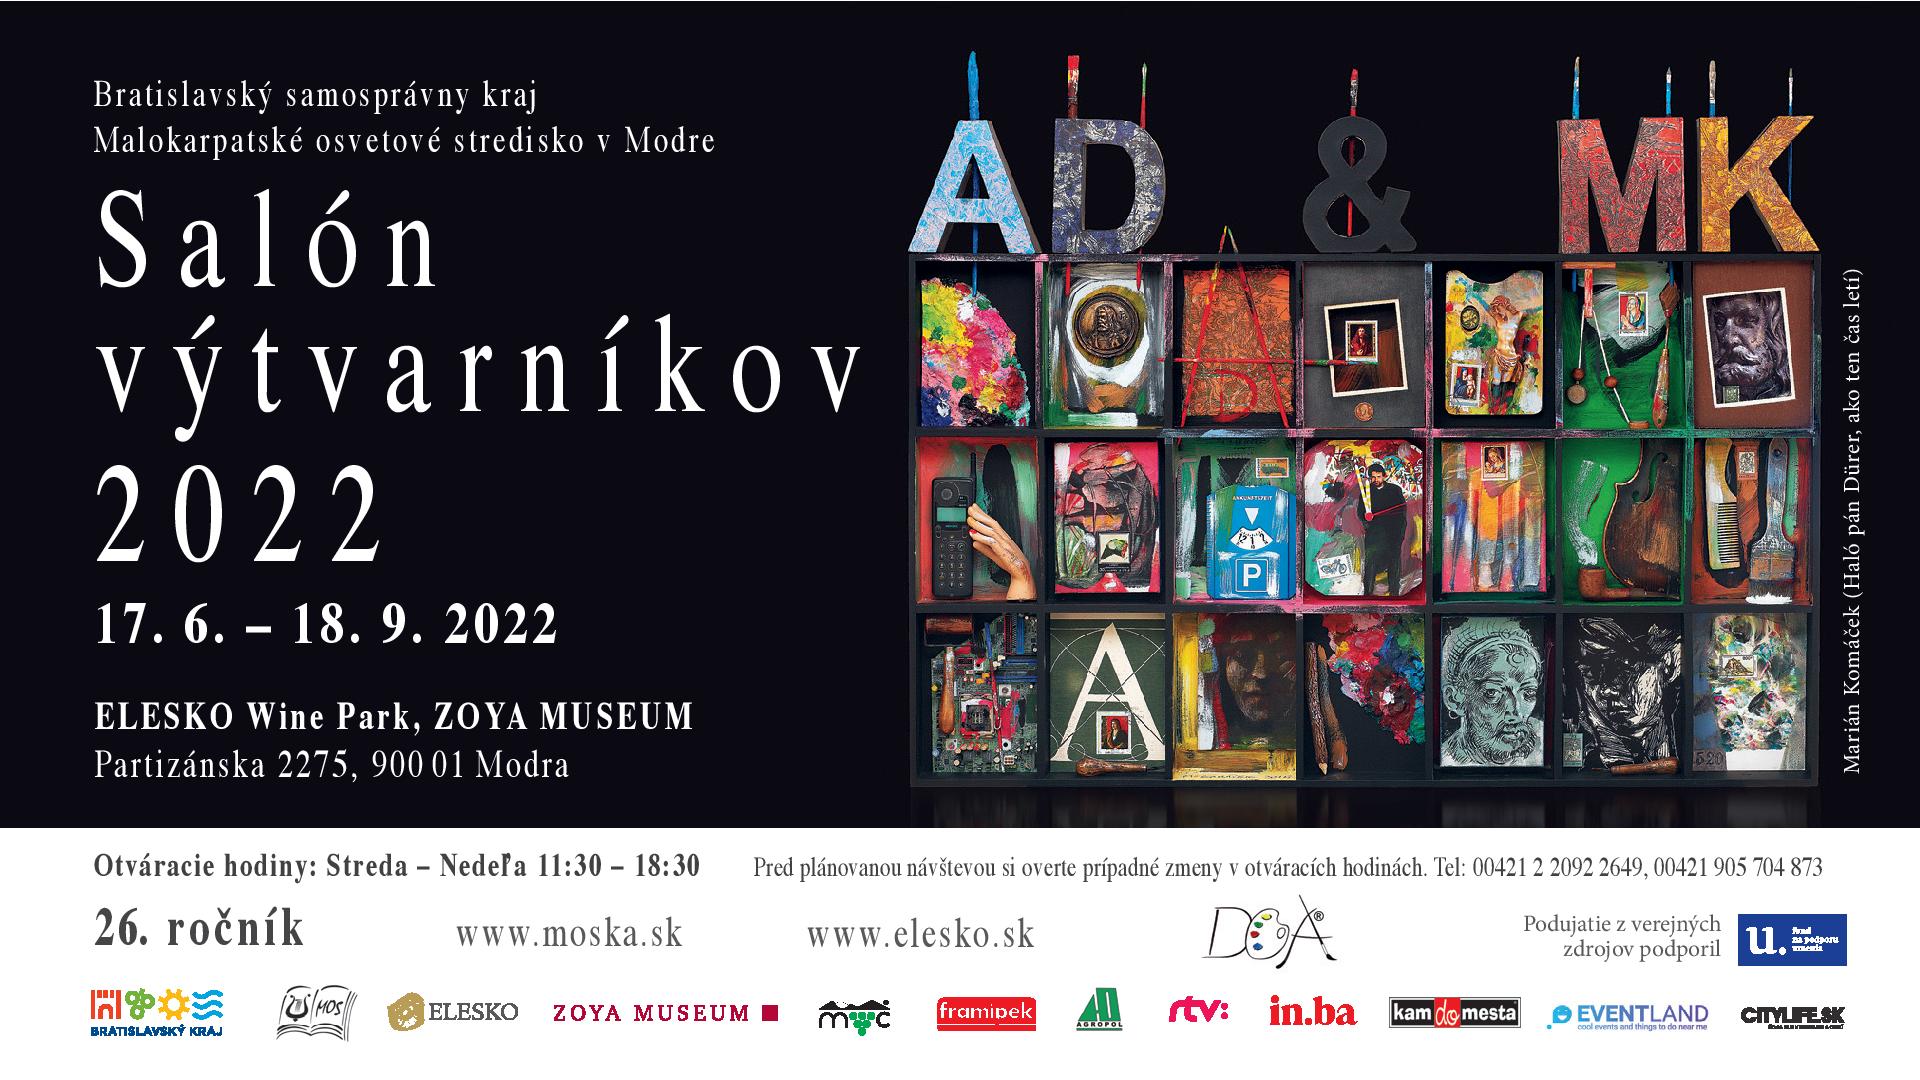 Salón výtvarníkov 2022 - kolektívna výstava 77 umelcov Bratislavského kraja